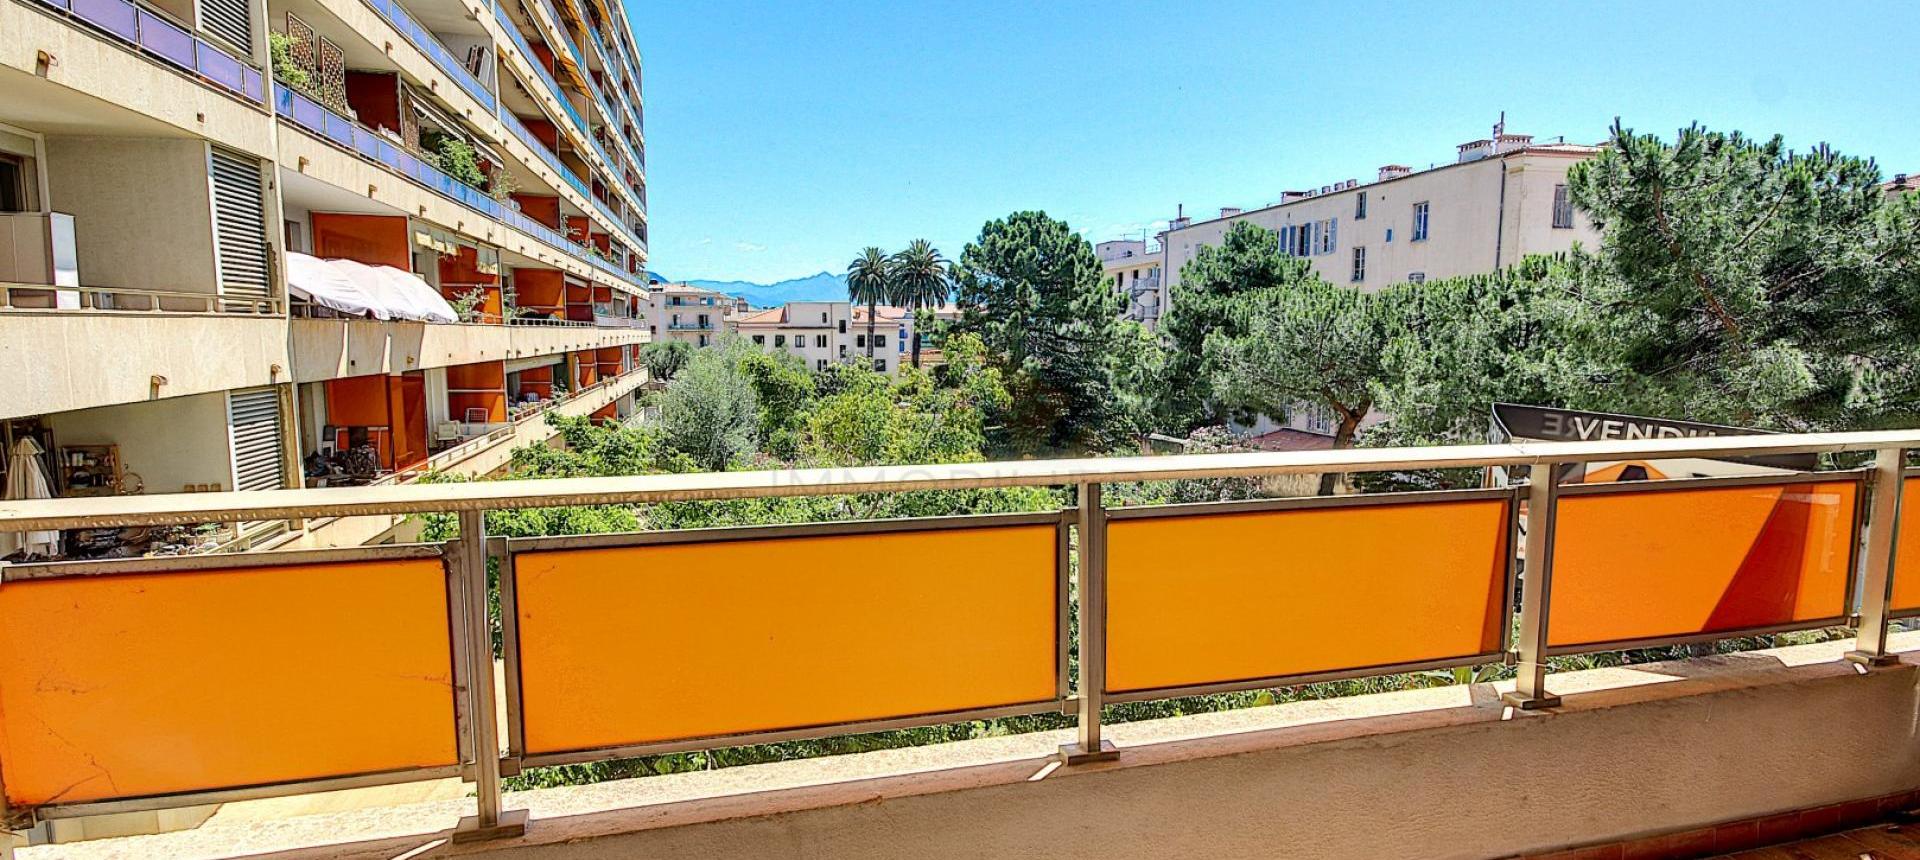 En Corse, à Ajaccio, Dans le triangle d'Or, à vendre un appartement de type F3 au 1er étage.